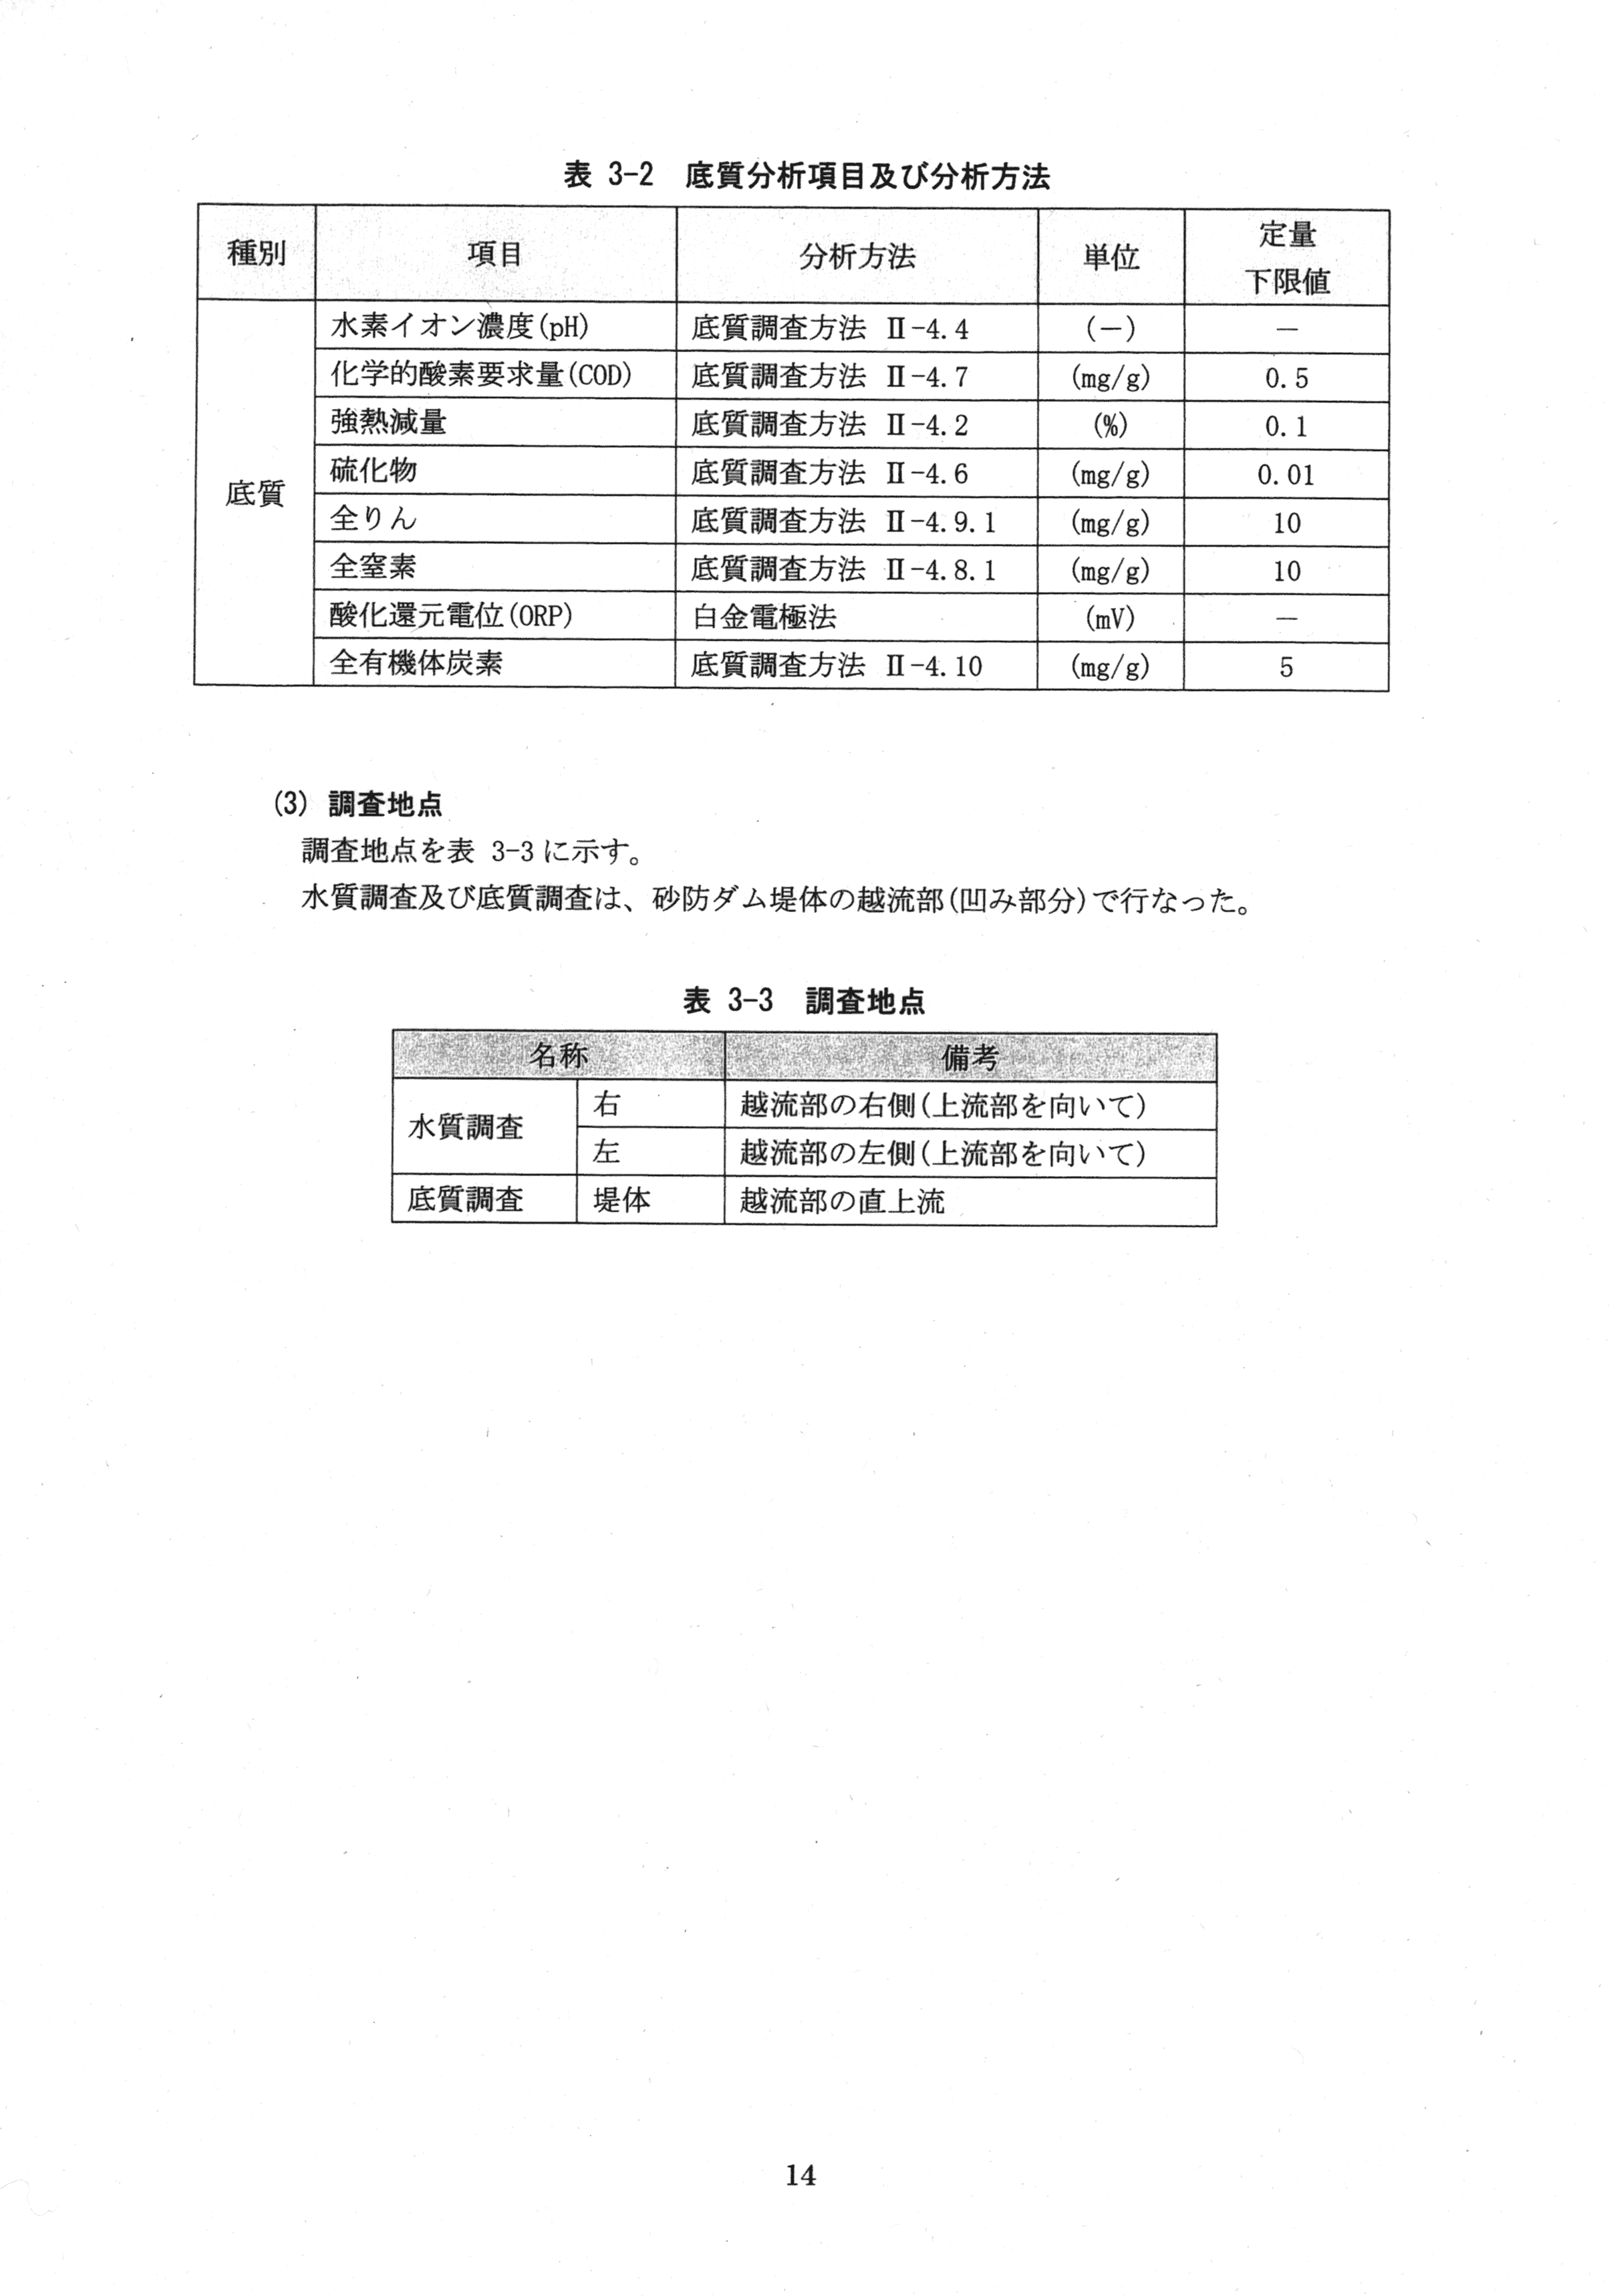 平成29年11月-赤田川水質汚濁状況調査報告書-16